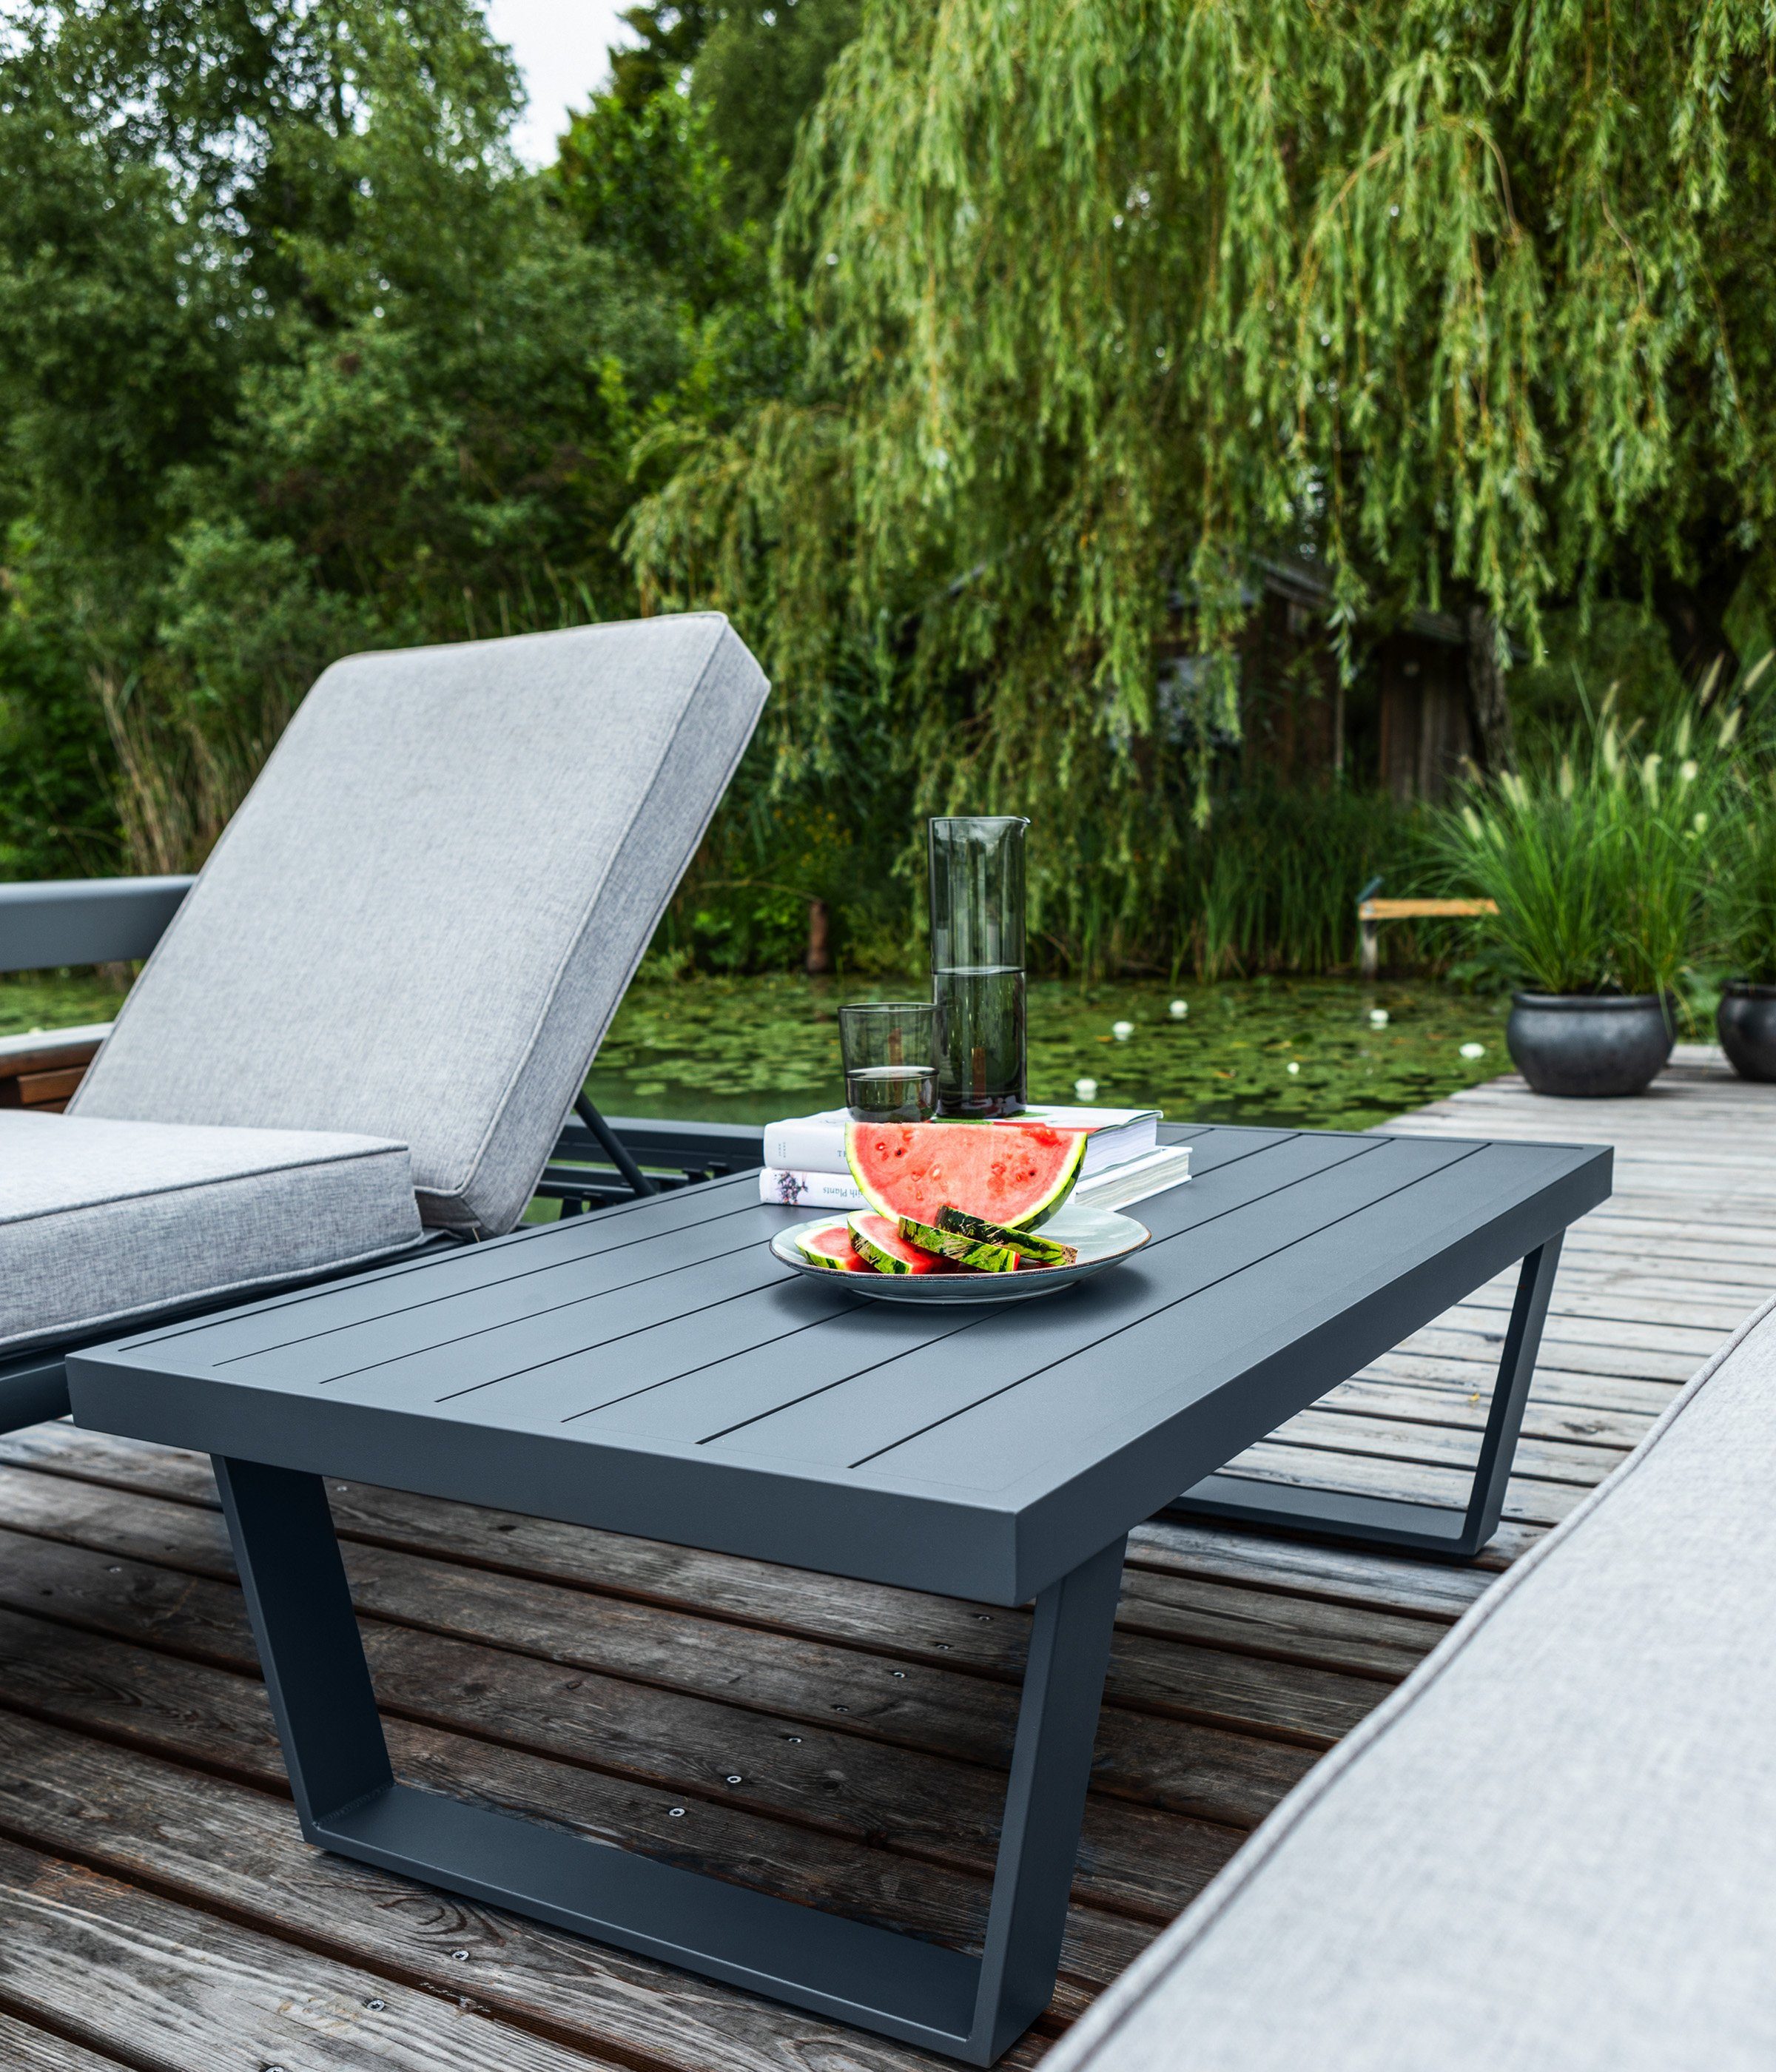 Dehner Gartentisch hochwertigem mit Polster, anwendbare Bellevue Aluminium-Gestell inkl. Lounge Vielseitig 3-teilig, Gartenlounge